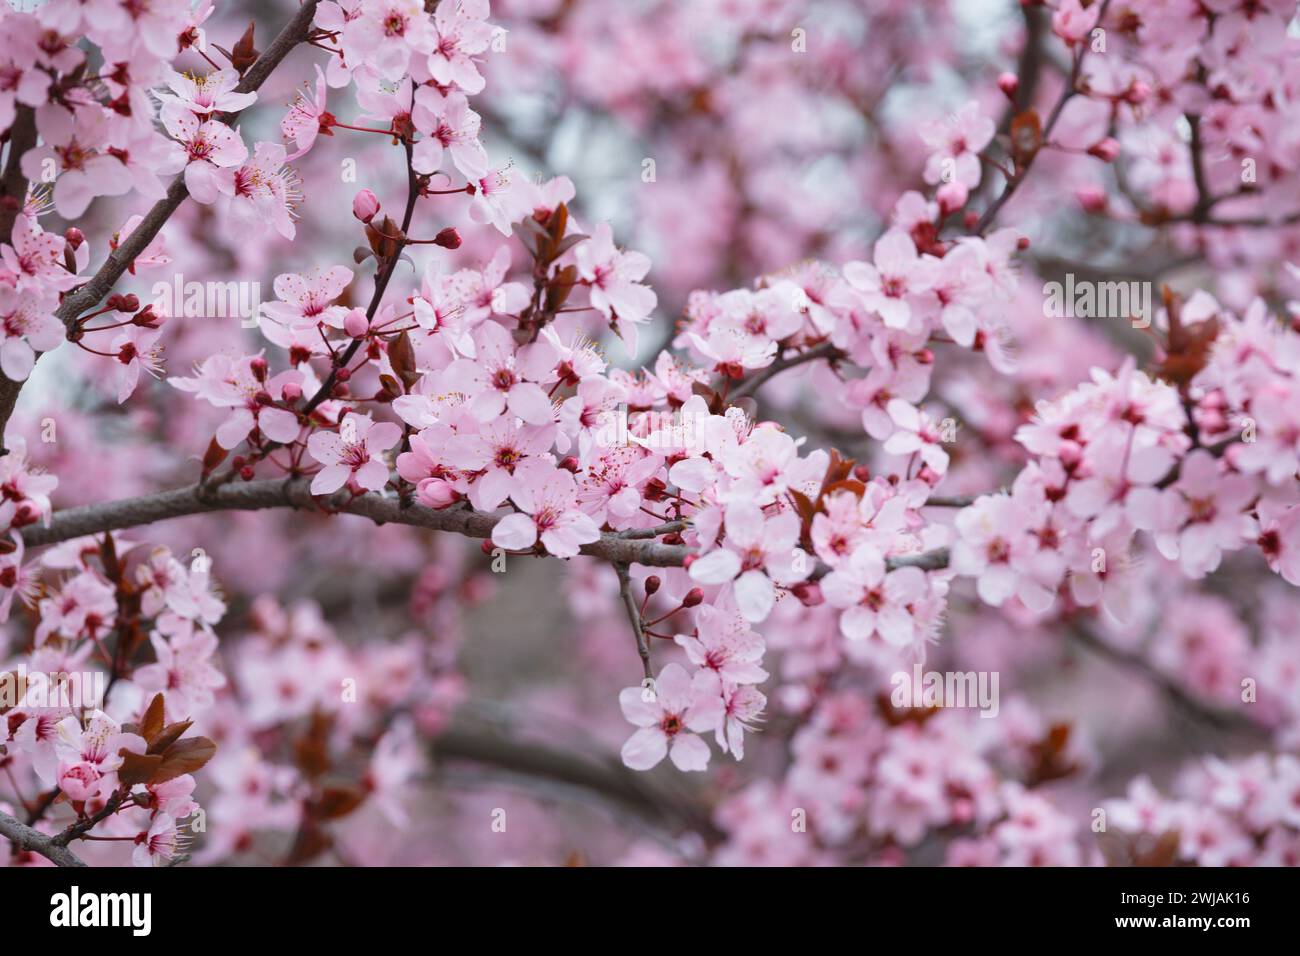 Branches de prune Pissardi ornementale en fleurs parsemées de fleurs roses. Fond floral de printemps. Gros plan de prunes fleuries. Prune cerise rouge et noire. Banque D'Images